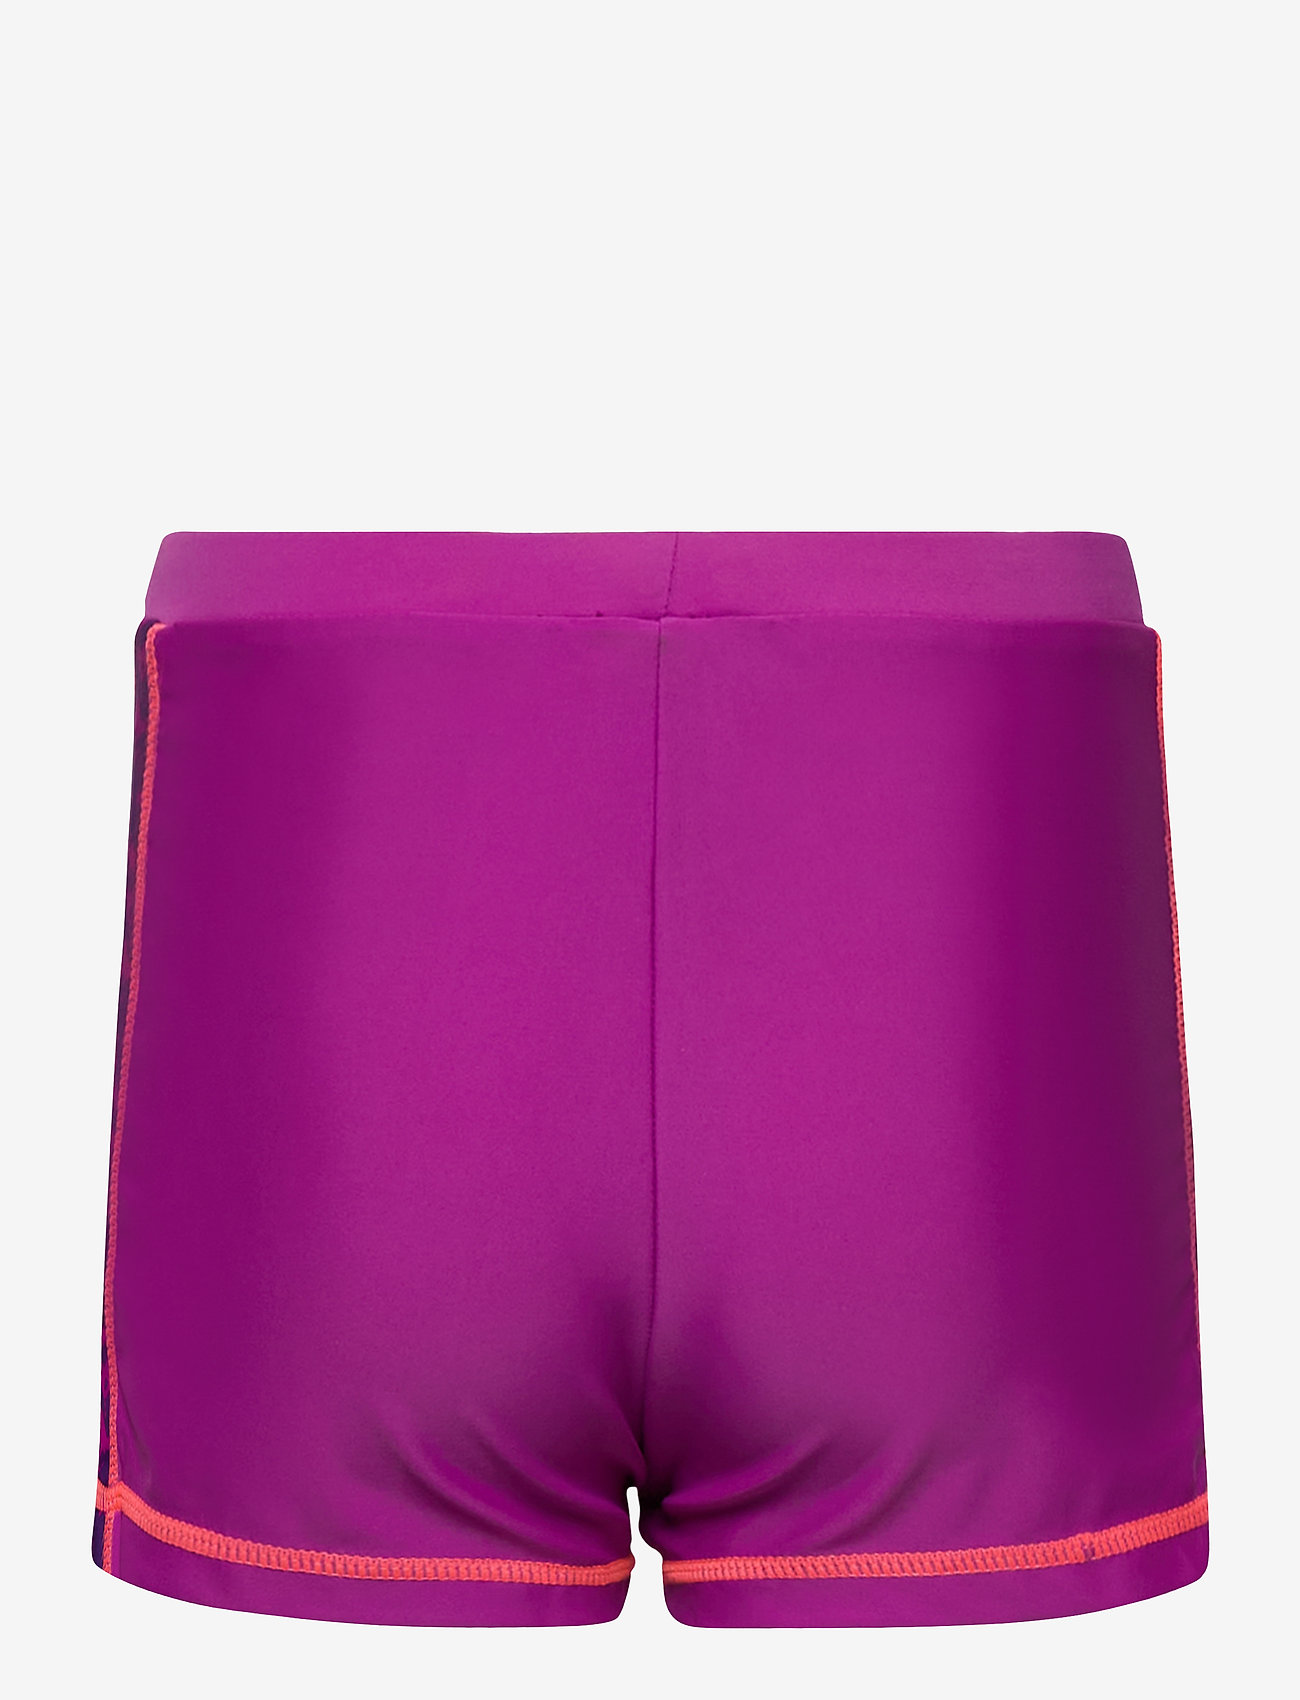 ZigZag - Logone UVA Girls Swim Shorts - kesälöytöjä - purple flower - 1